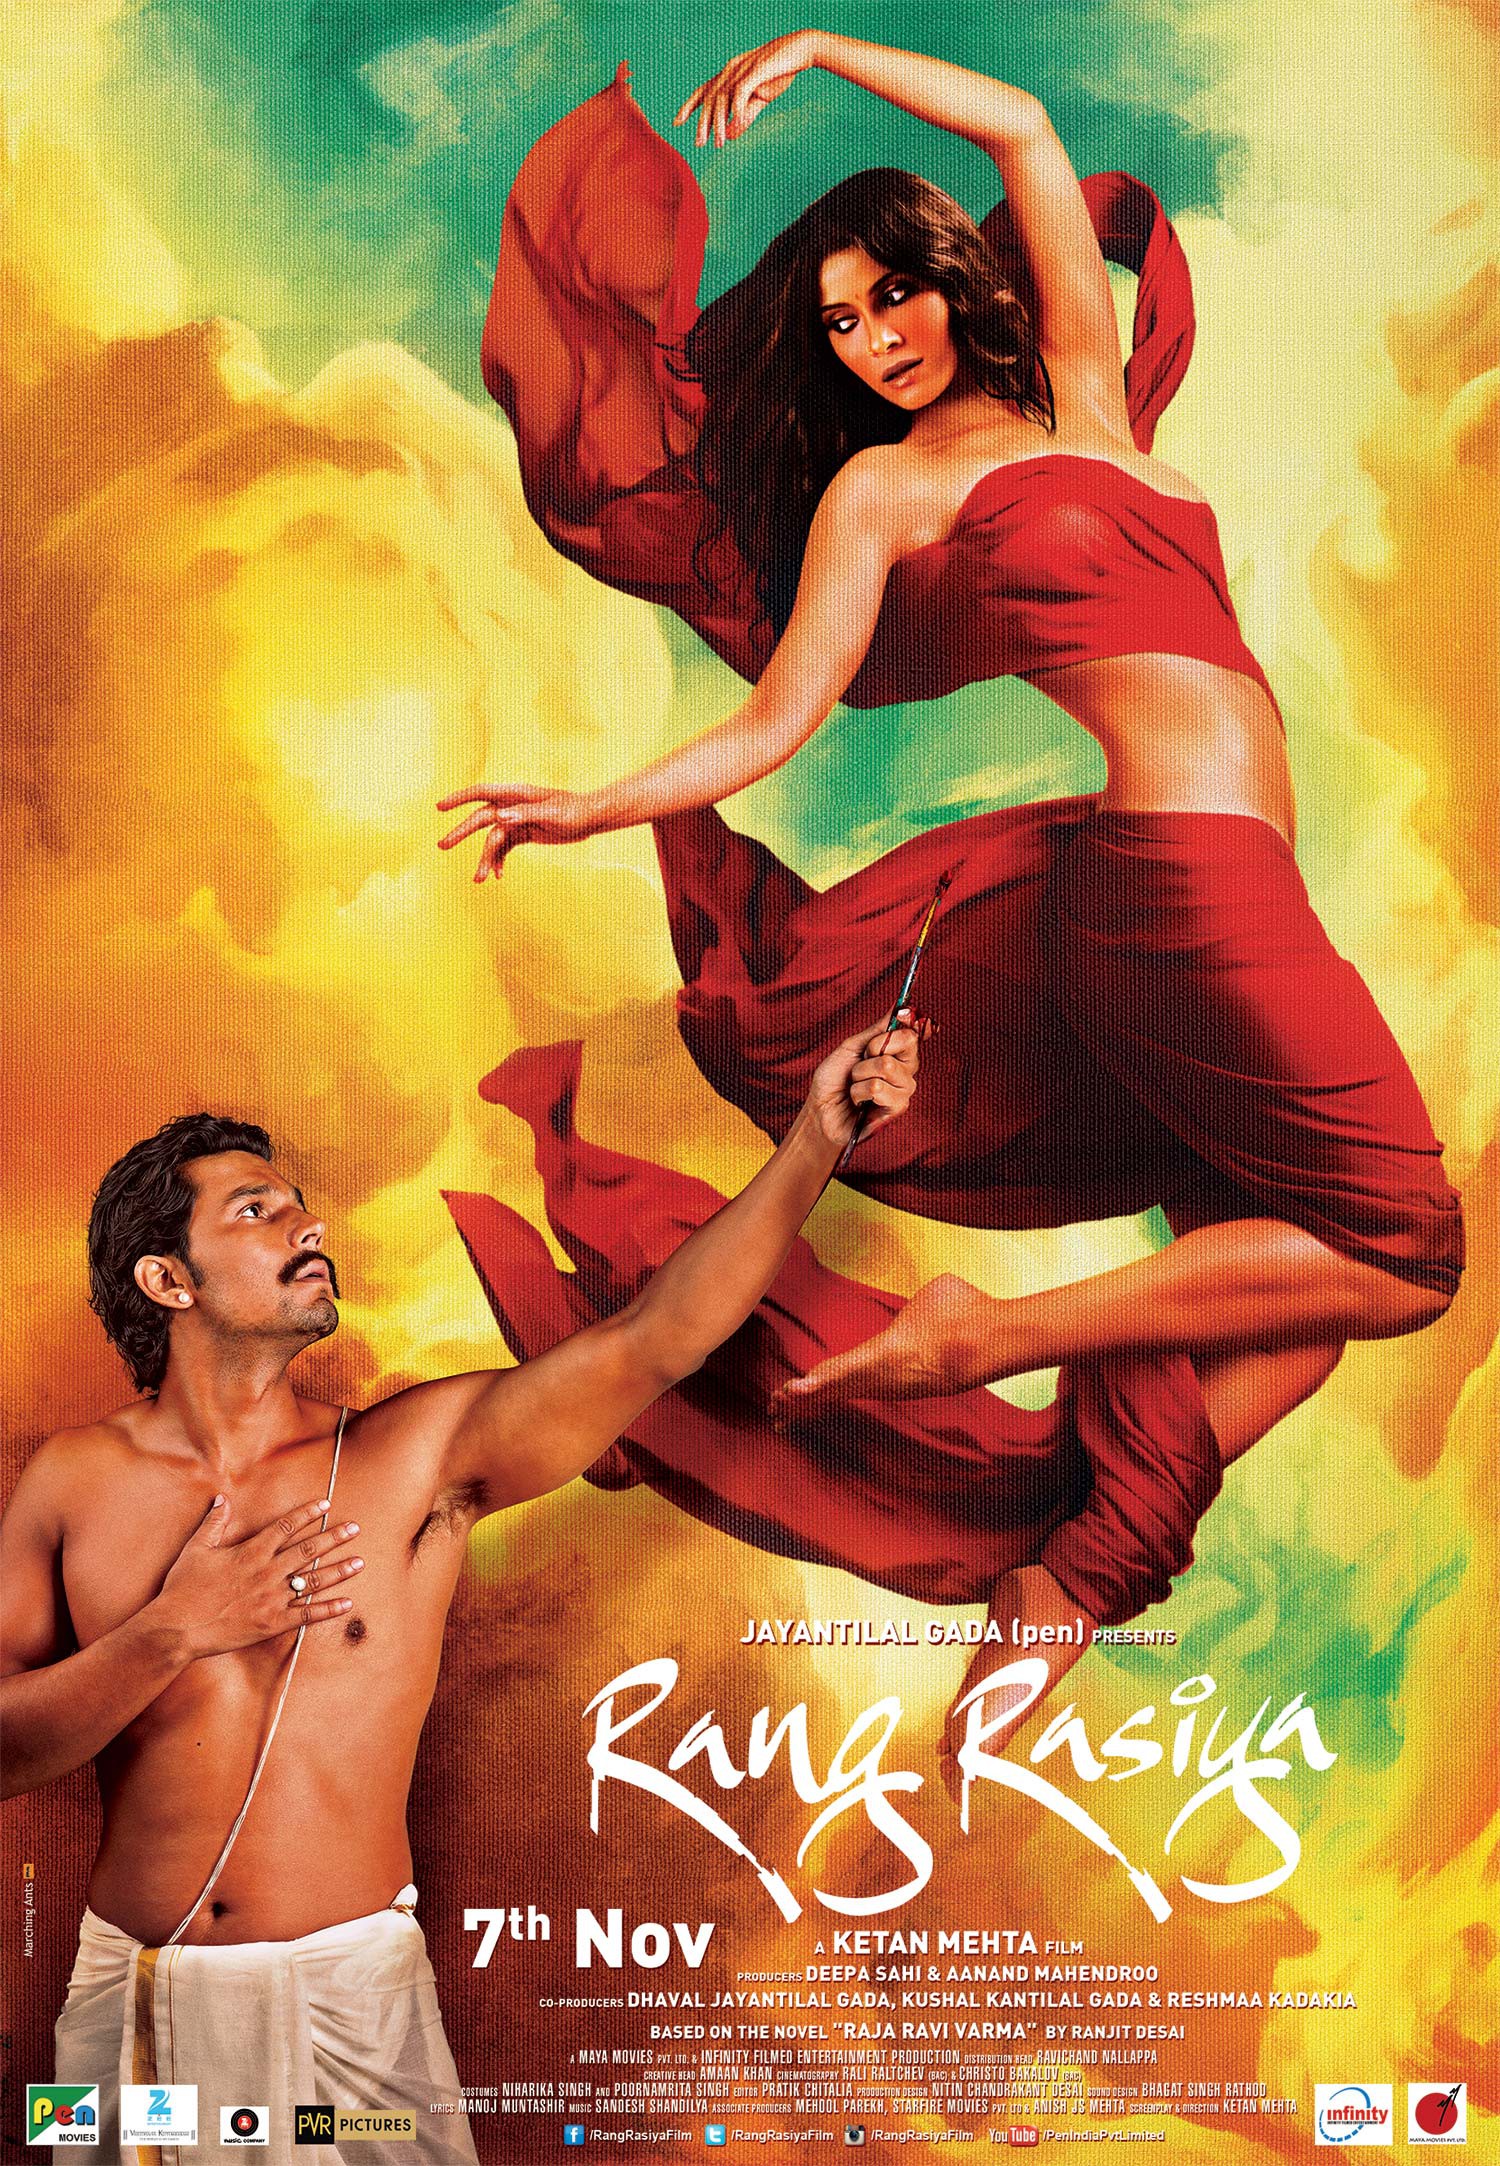 Mega Sized Movie Poster Image for Rang rasiya (#9 of 9)